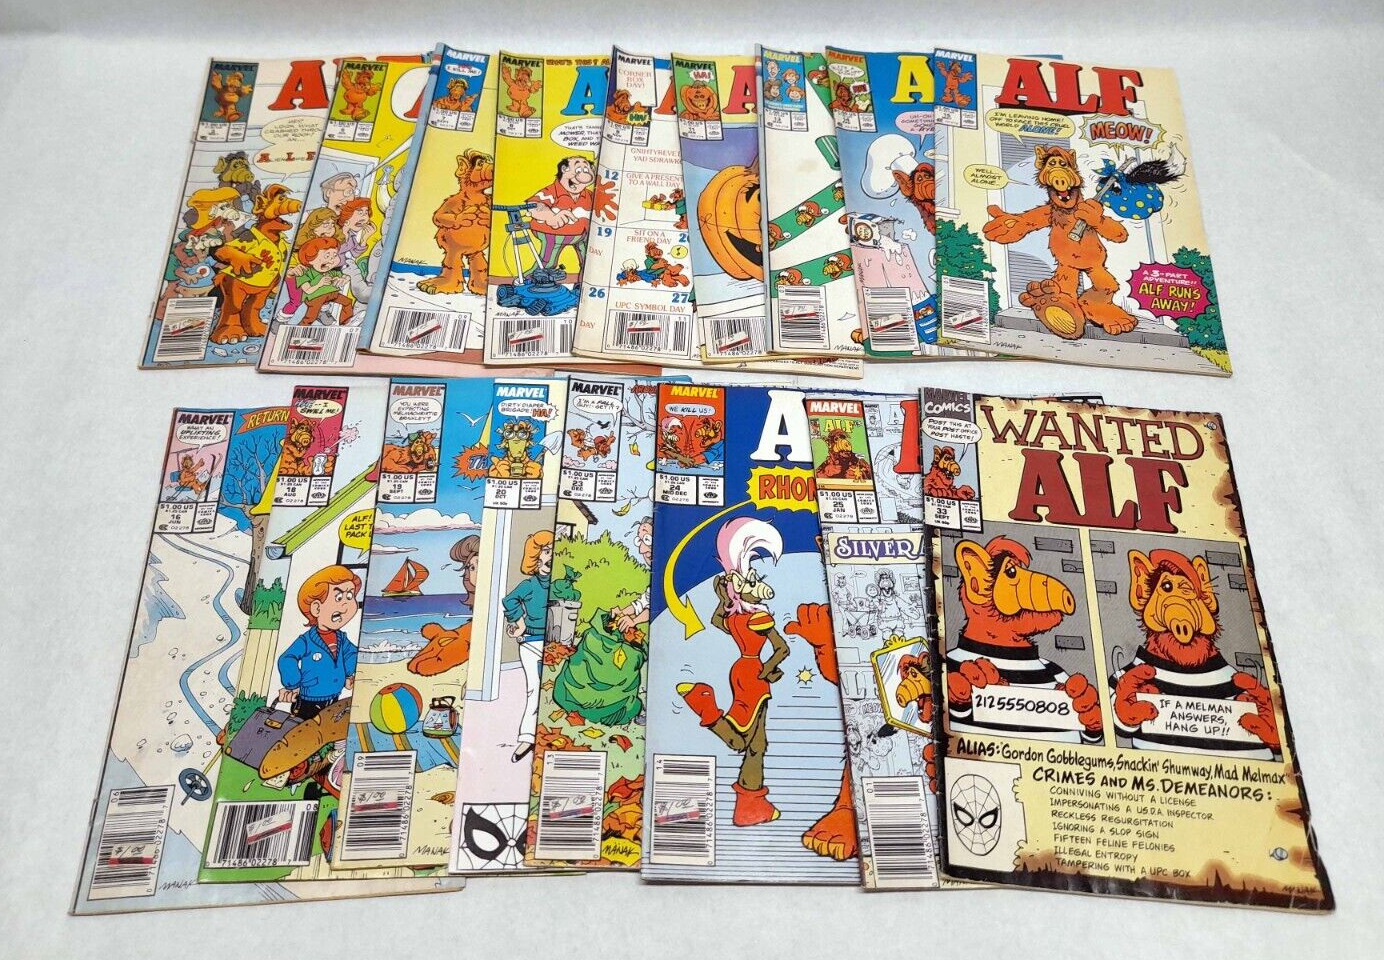 ALF #3, 5, 7-9, 11, 13-16, 18-20, 23-25 & 33 - 1988-90 Marvel Comics Lot of 17